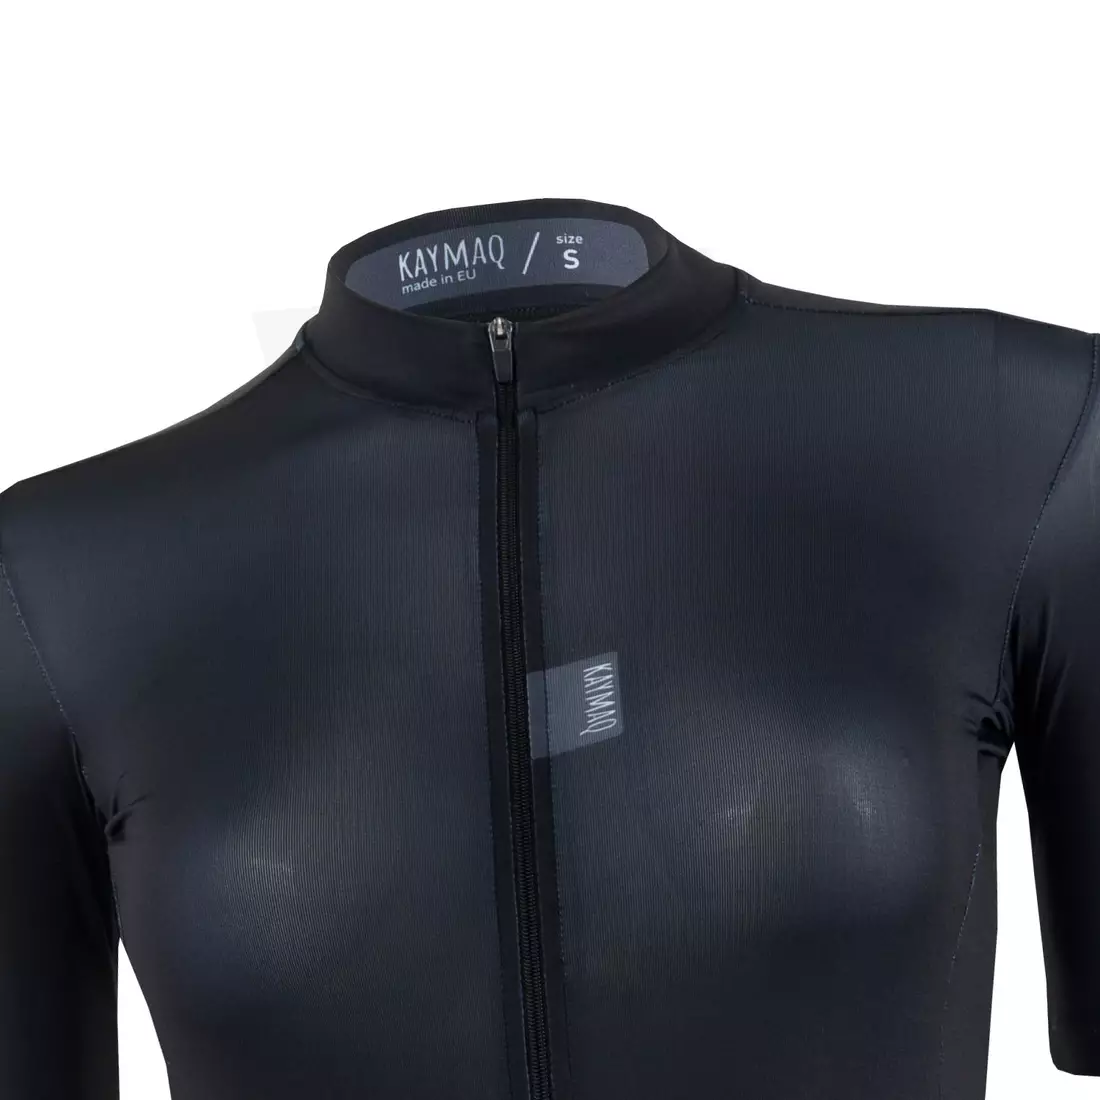 KAYMAQ women's Short Sleeve Cycling Jersey Black KYQ-SS-2001-4